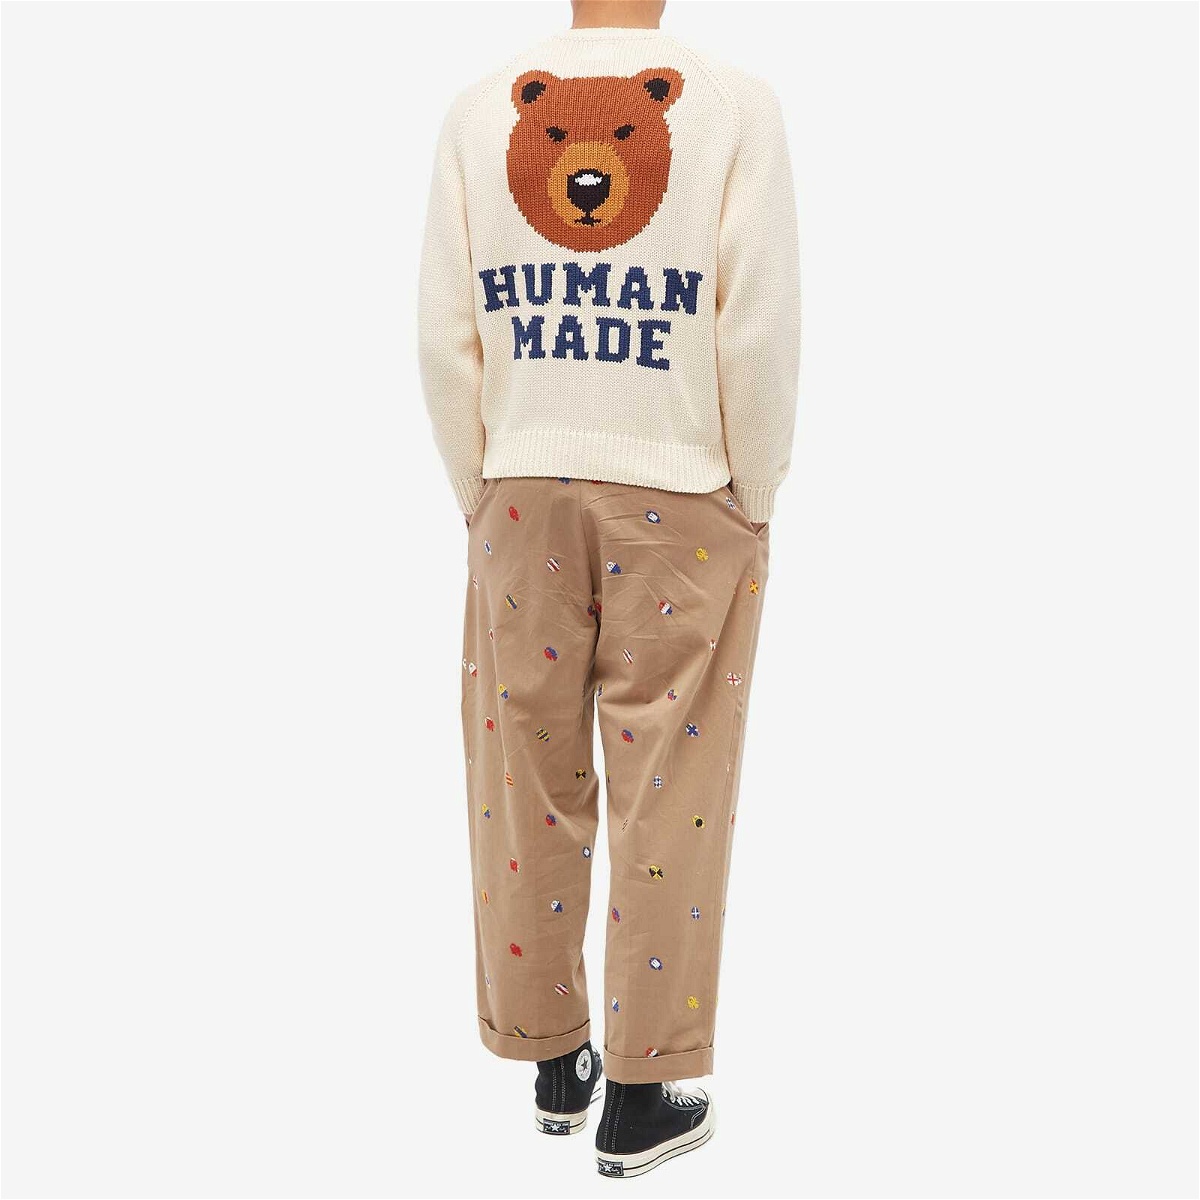 Human Made Men's Bear Raglan Knit Sweater in White Human Made